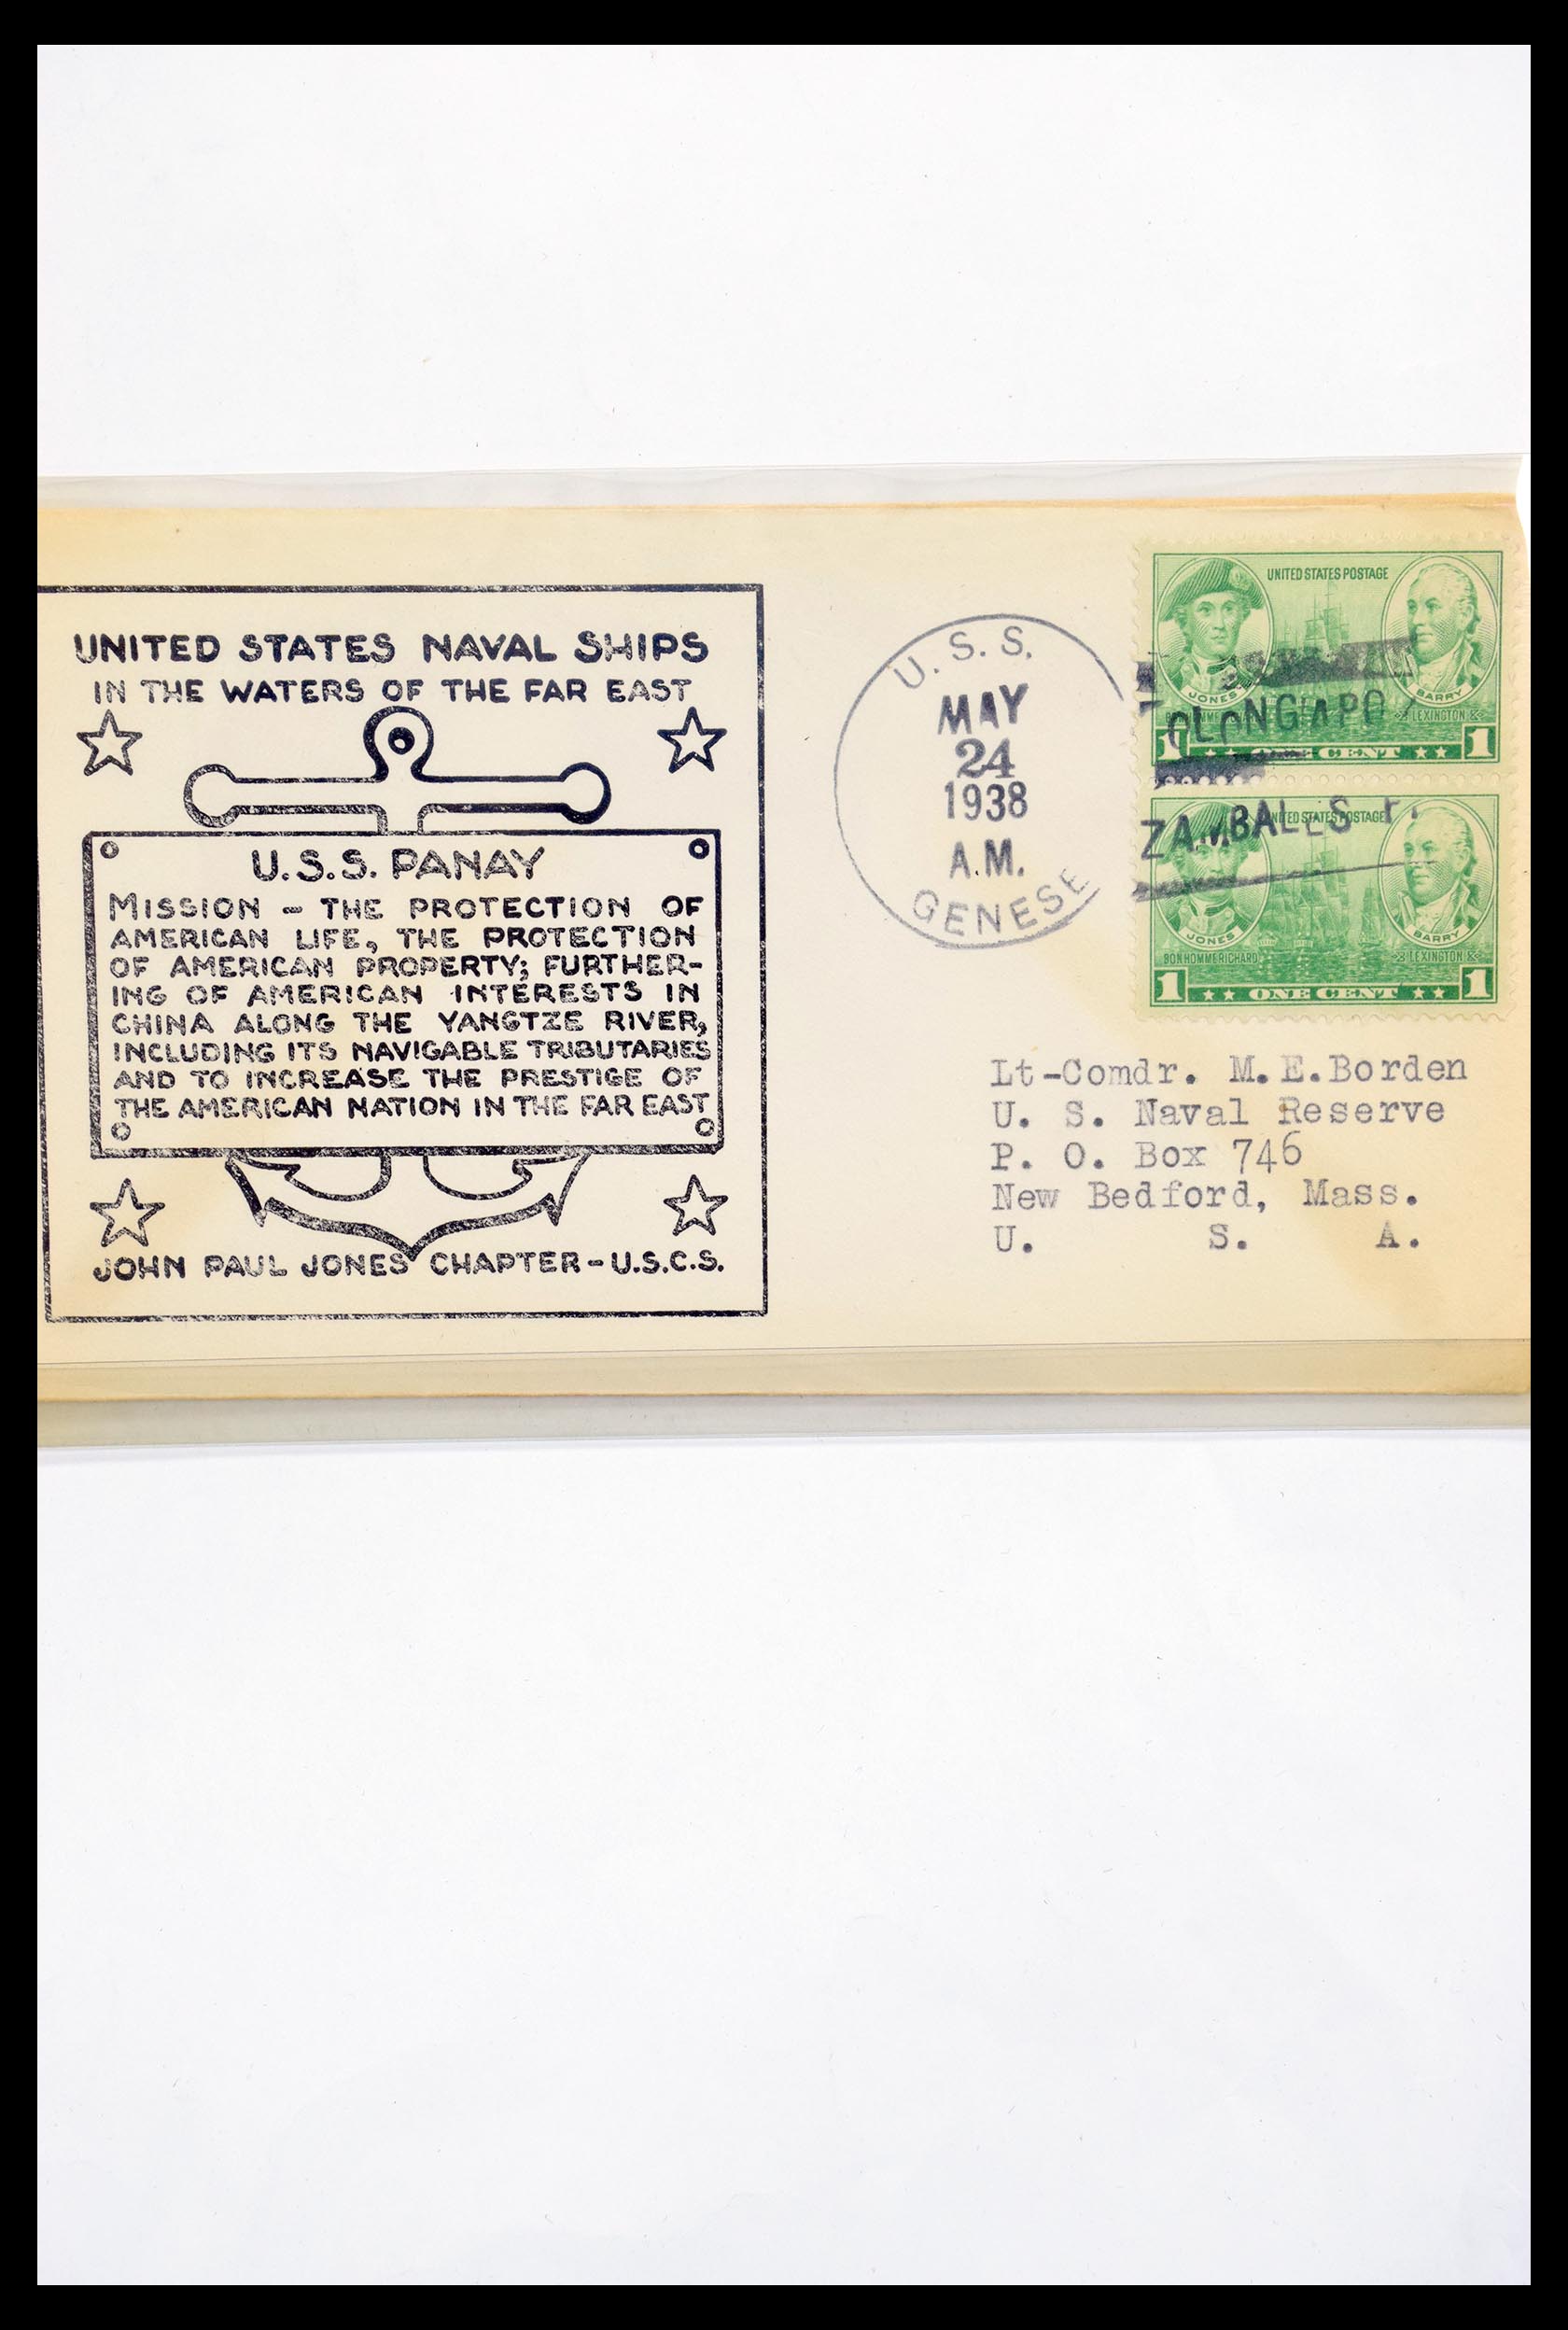 30341 307 - 30341 USA scheepspost brieven 1930-1970.